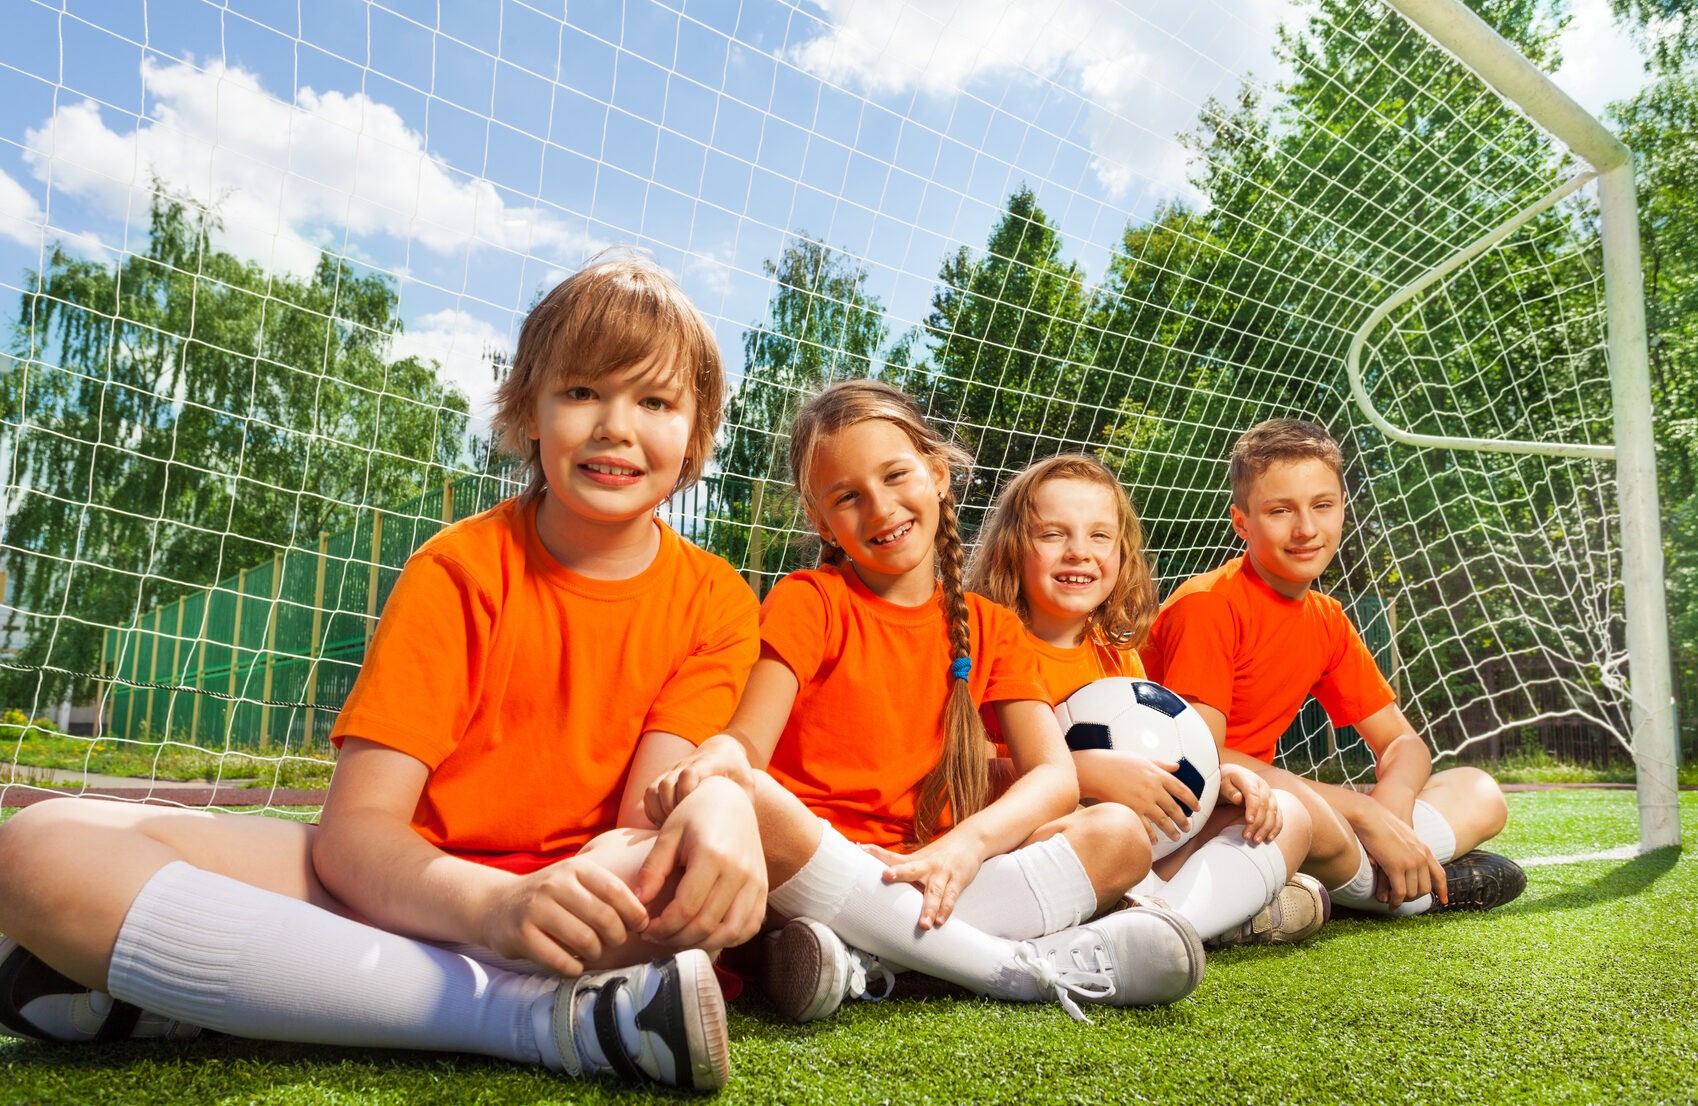 Отмечена роль спорта в жизни детей